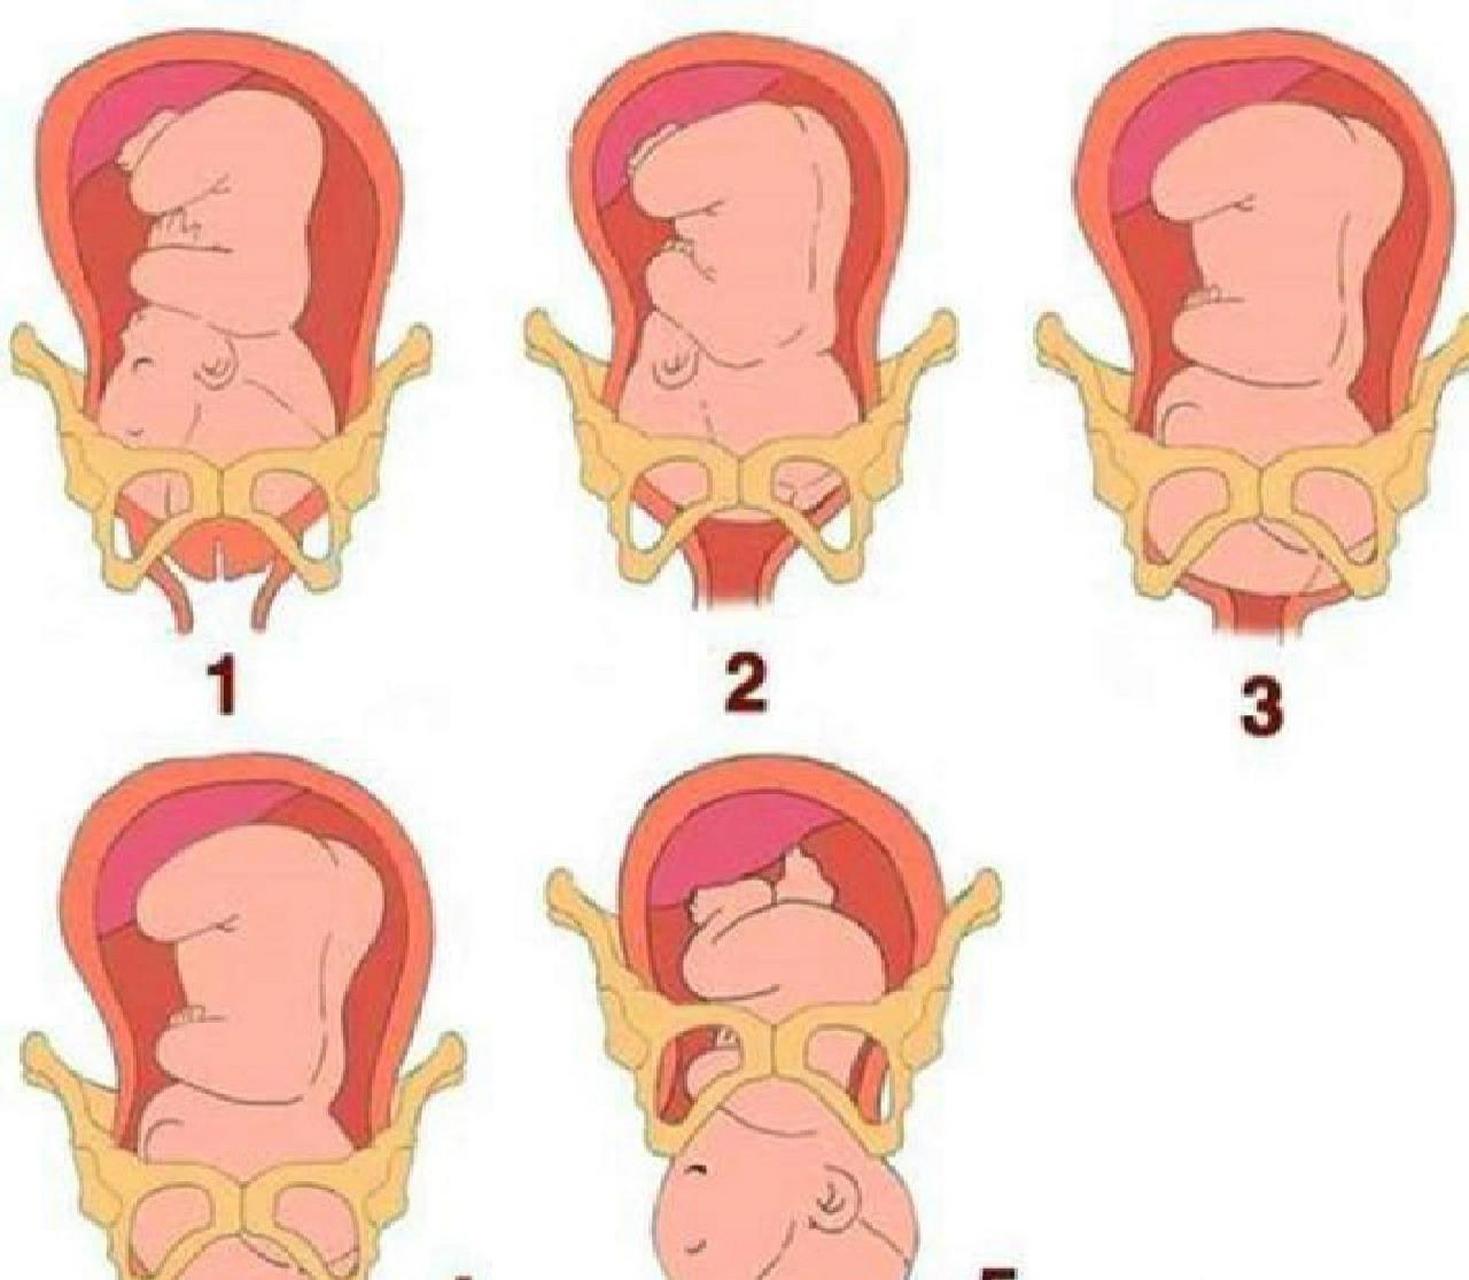 对于初次怀孕的女性来说,胎儿在待产期突然入盆或逐渐入盆的情况非常